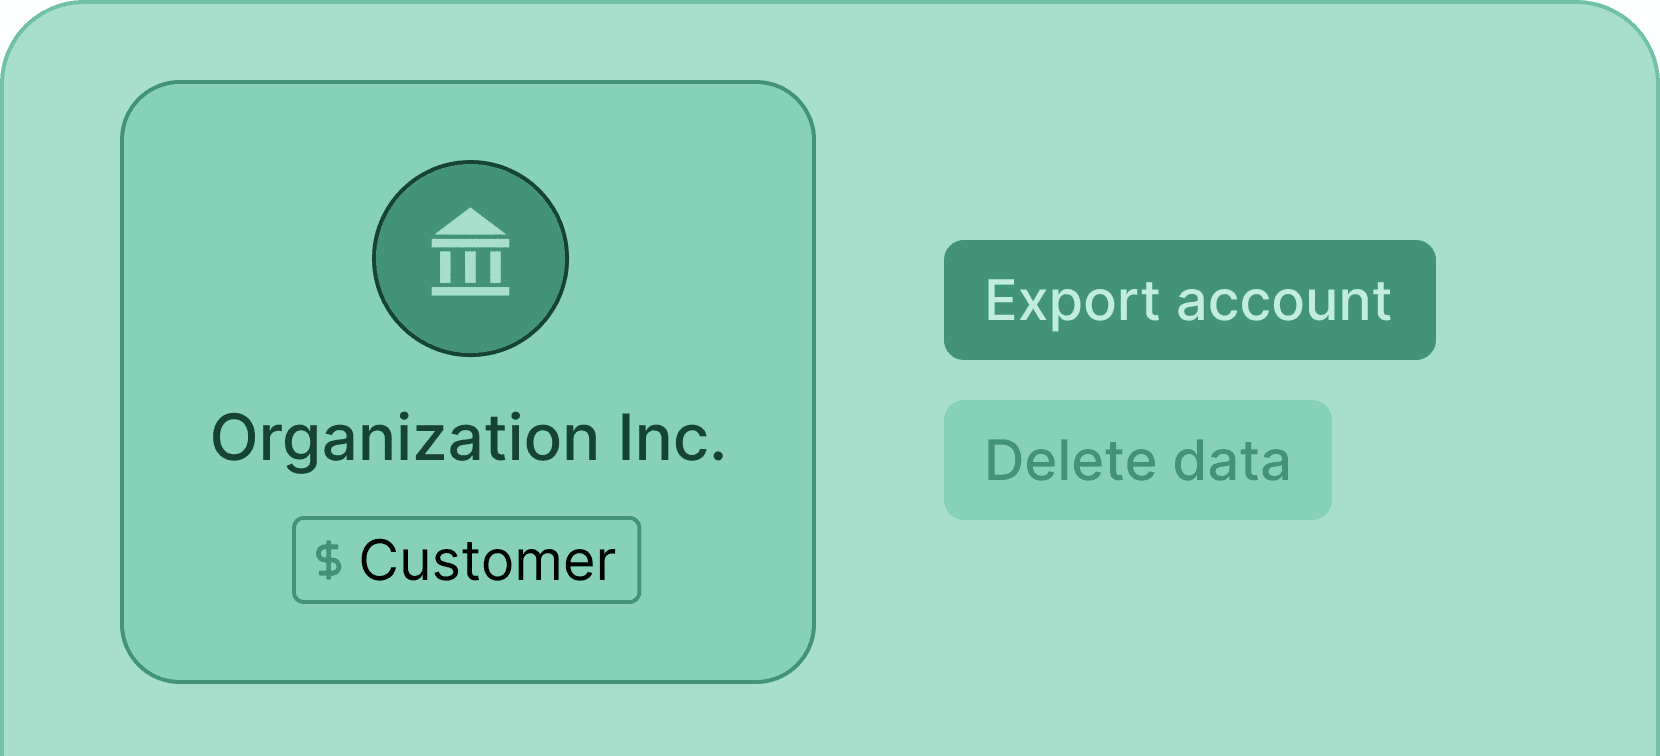 Export account data - Certifier features